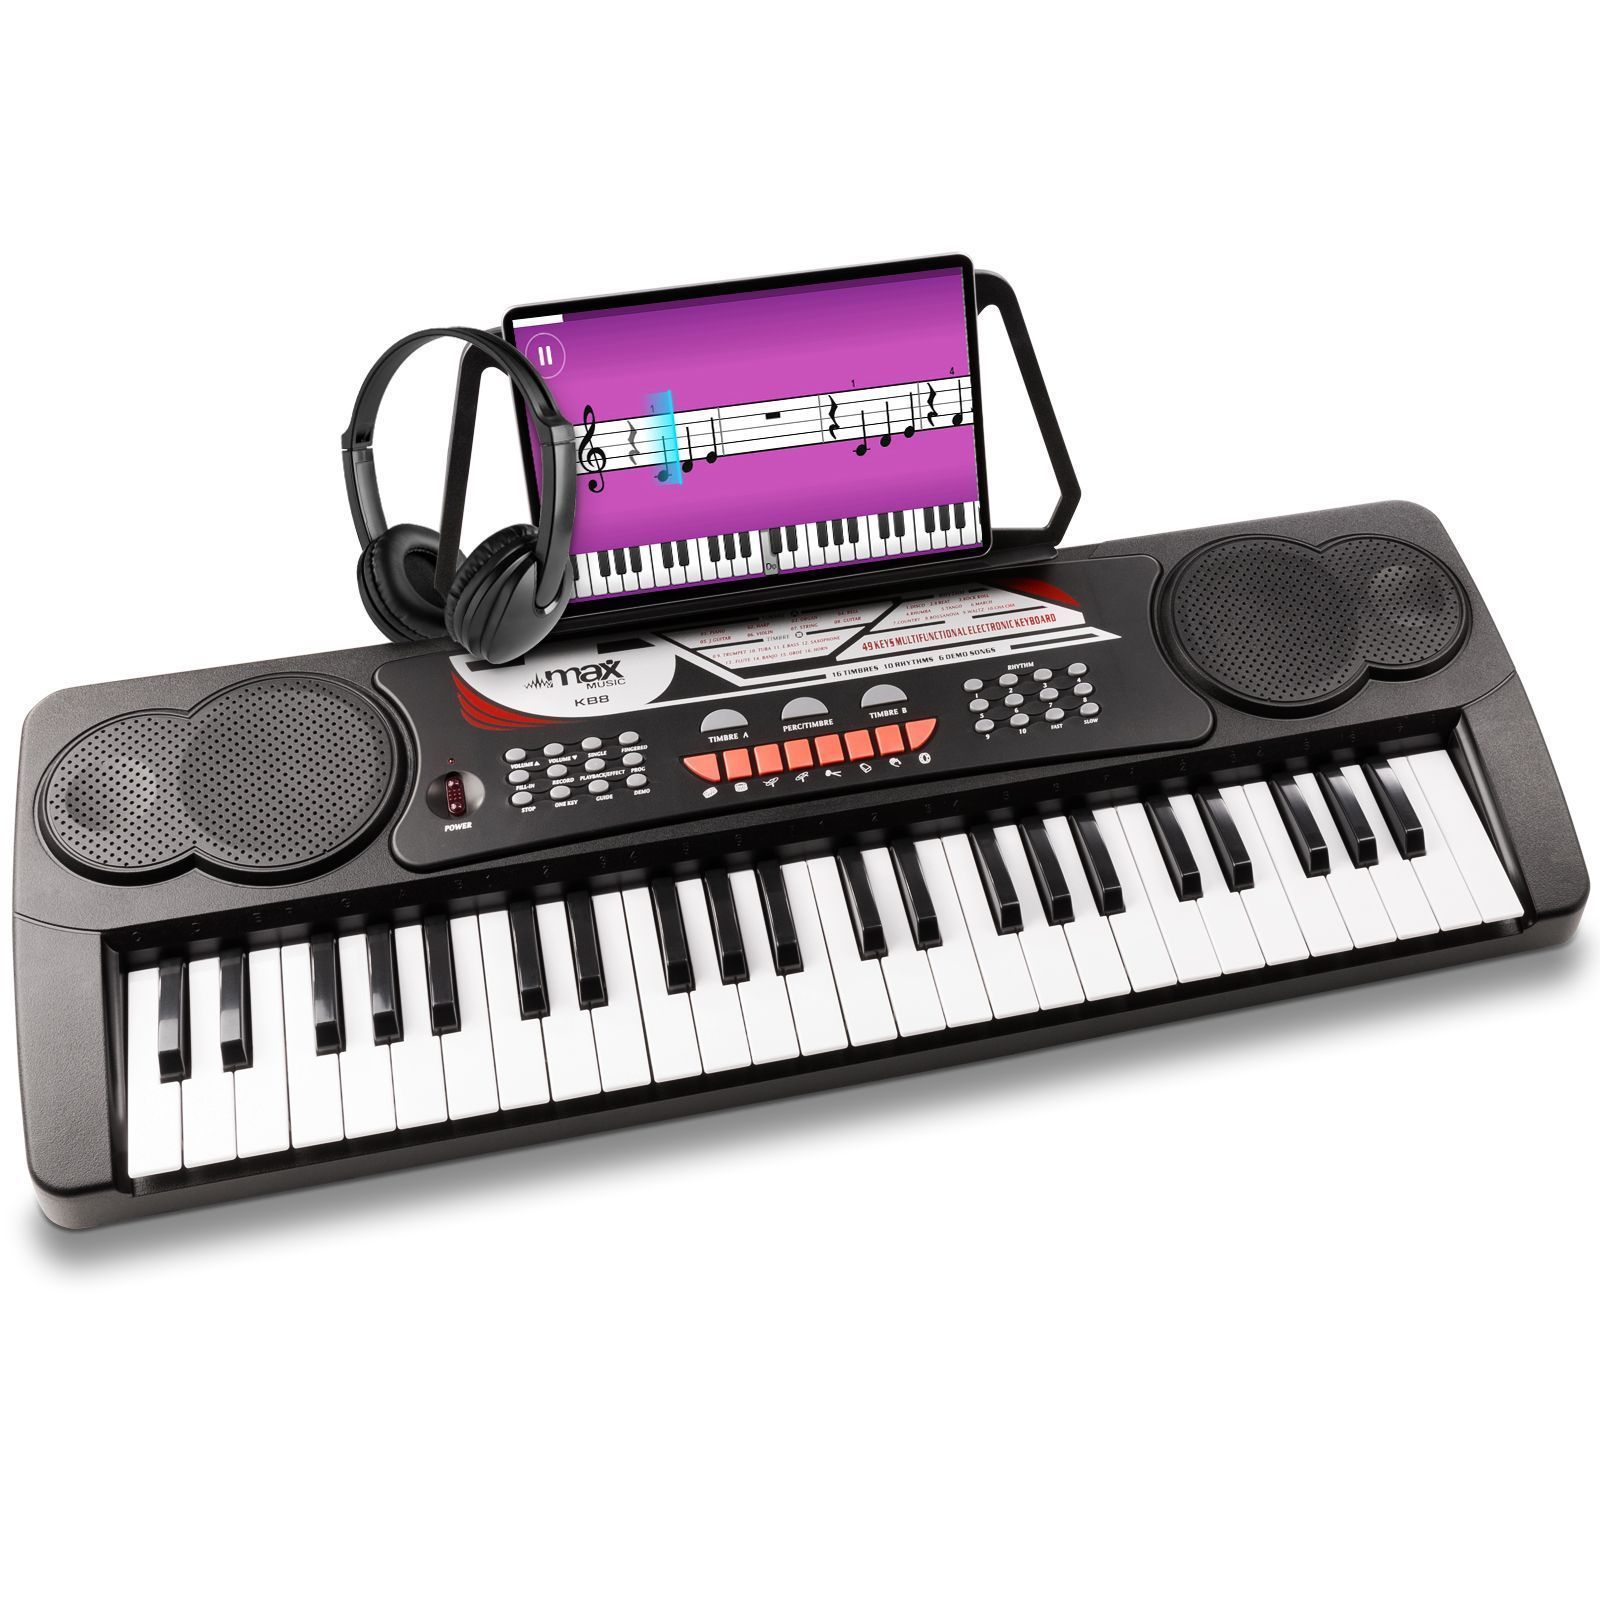 Max KB4 Kit Clavier Electronique avec Casque Audio et Stand